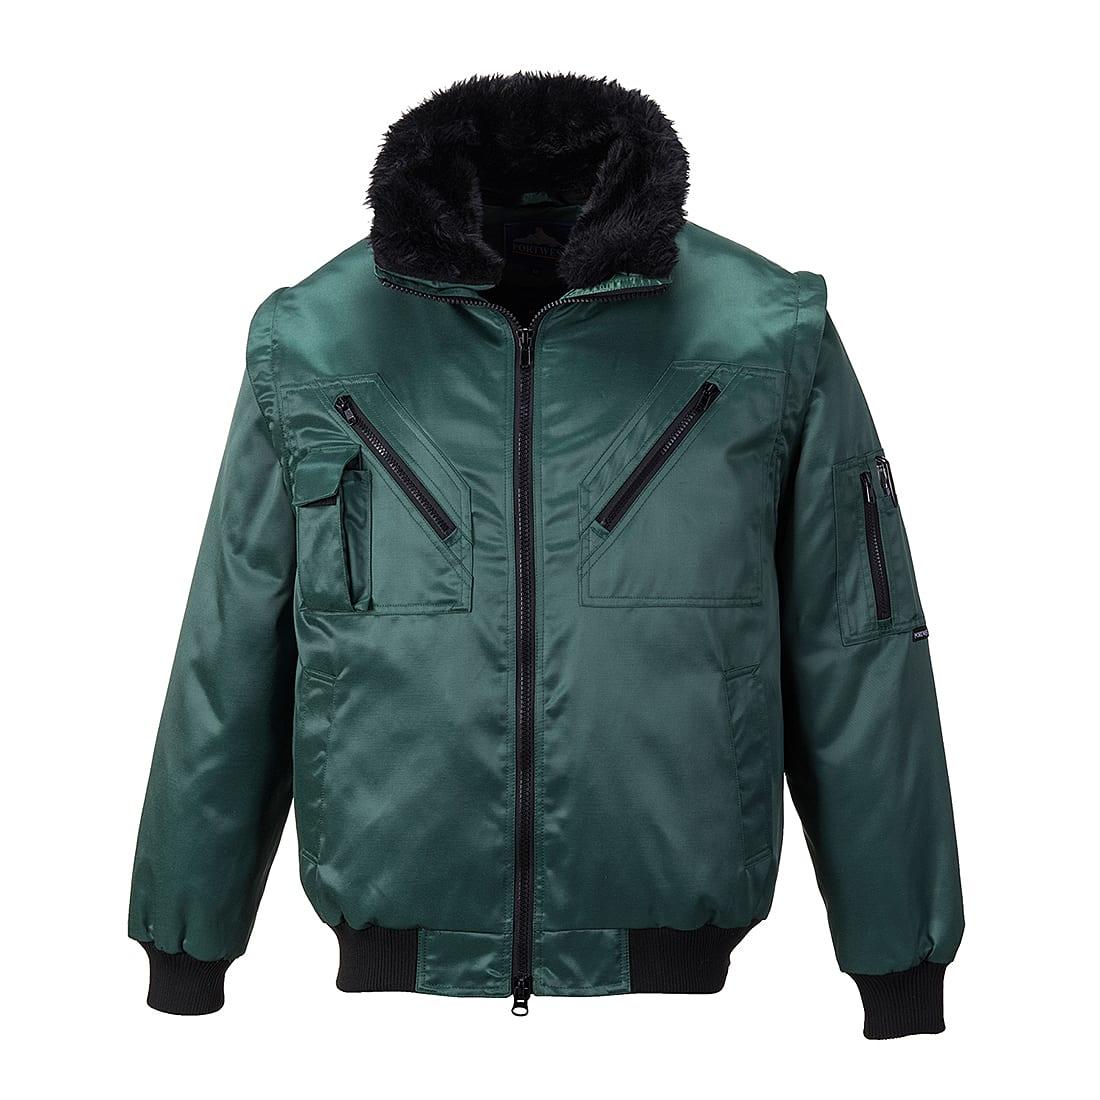 Portwest Fur-Lined Pilot Jacket | PJ10 | Workwear Supermarket